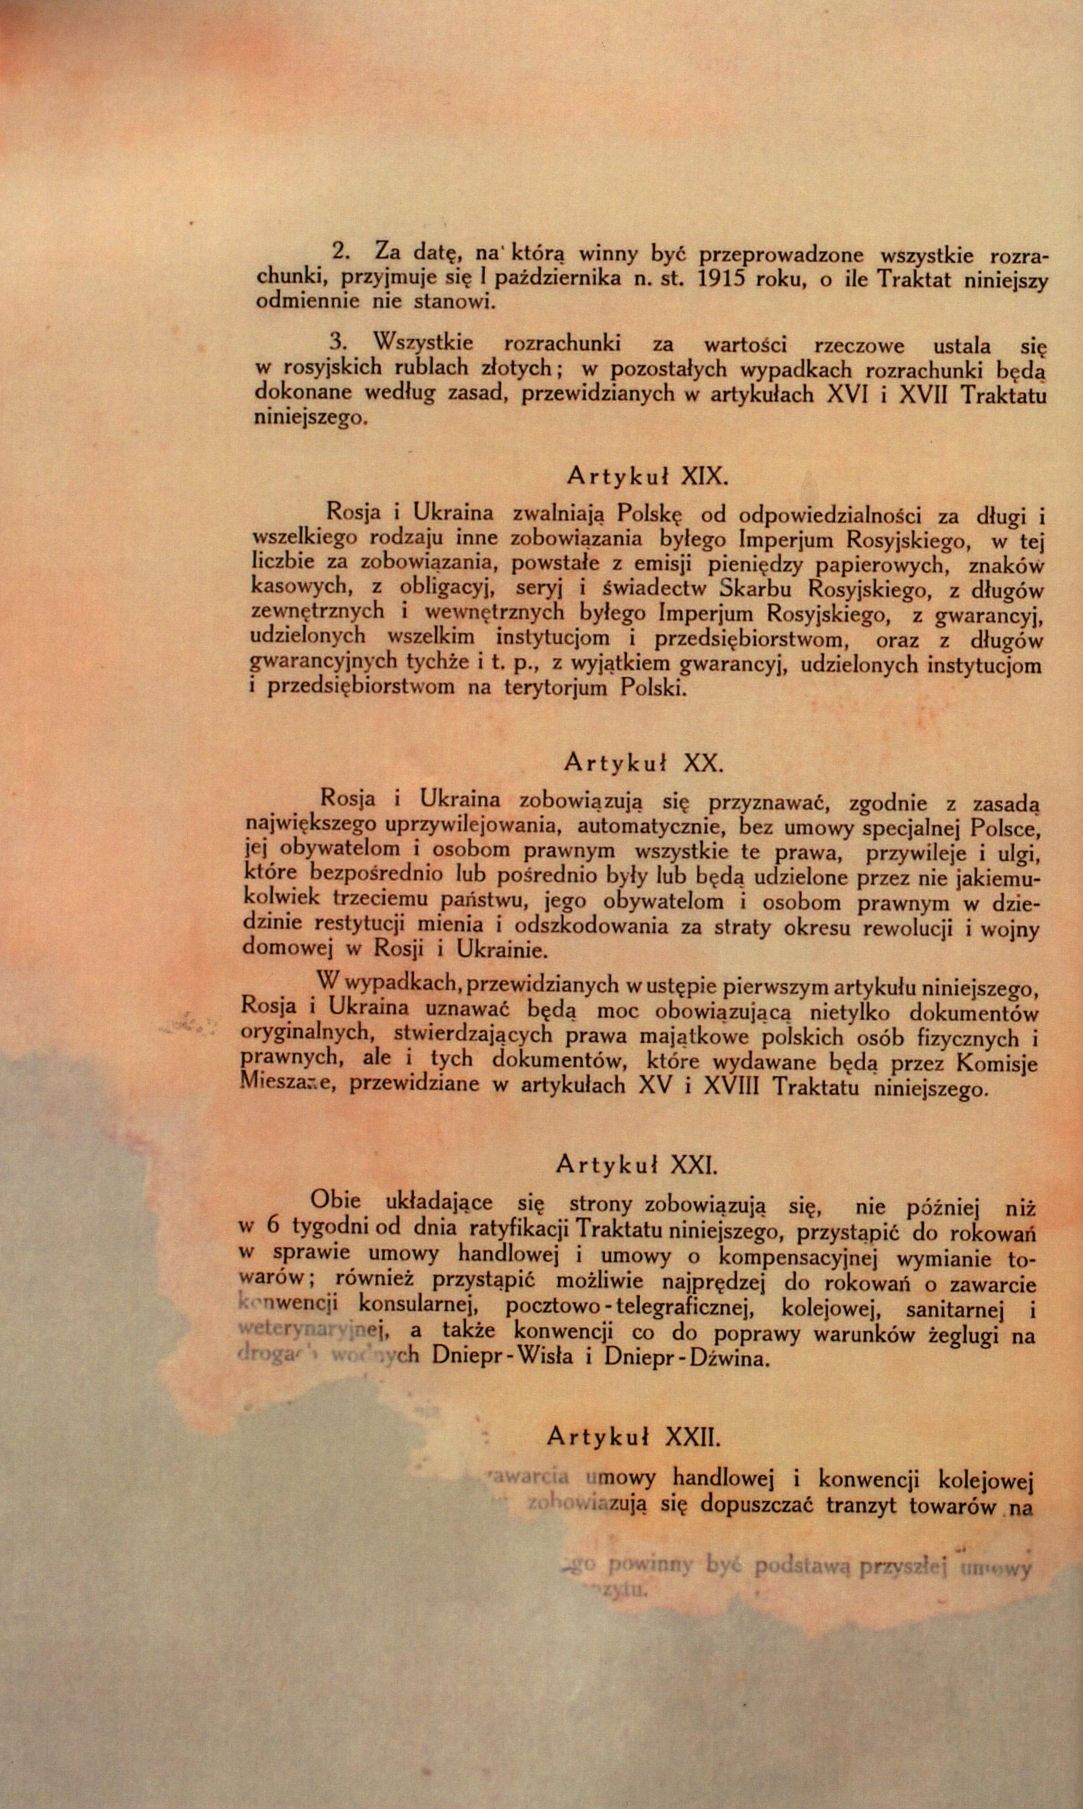 Traktat Pokoju między Polską a Rosją i Ukrainą podpisany w Rydze dnia 18 marca 1921 roku, s. 20, MSZ, sygn. 6739.